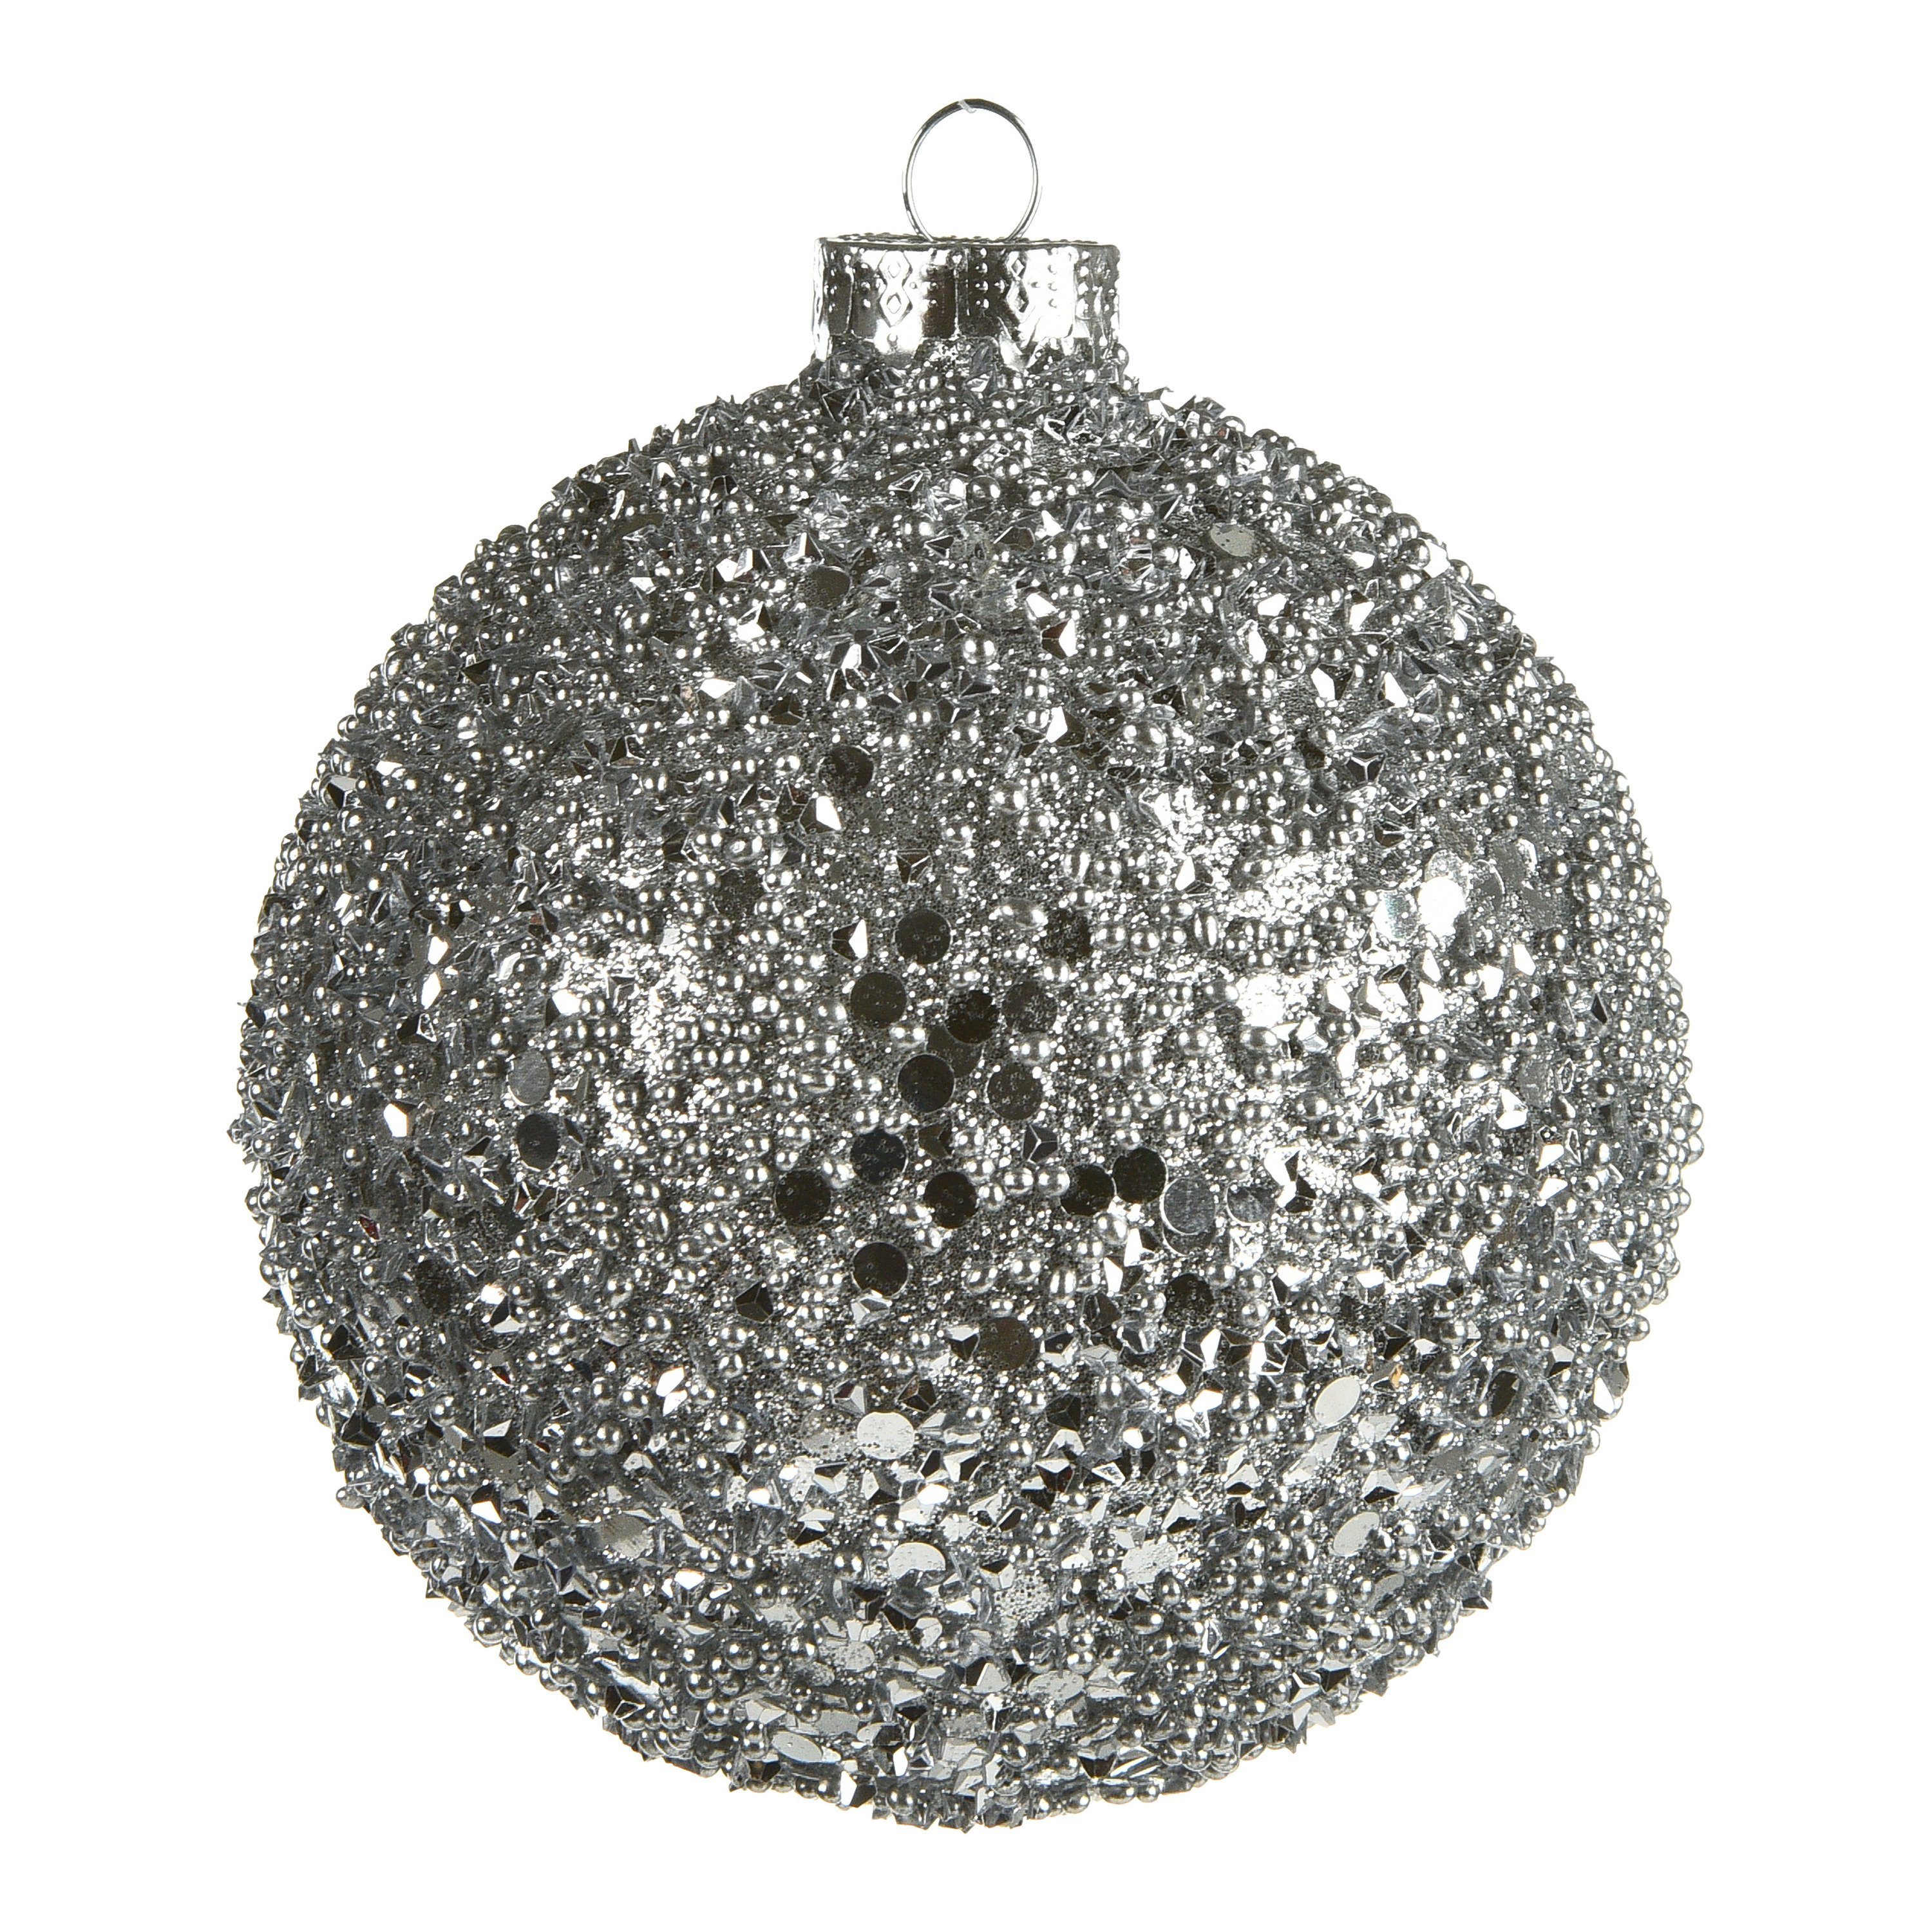 Neuzugänge diese Woche Depot Weihnachtsbaumkugel Glas-Weihnachtskugel Roundgranulat Silber